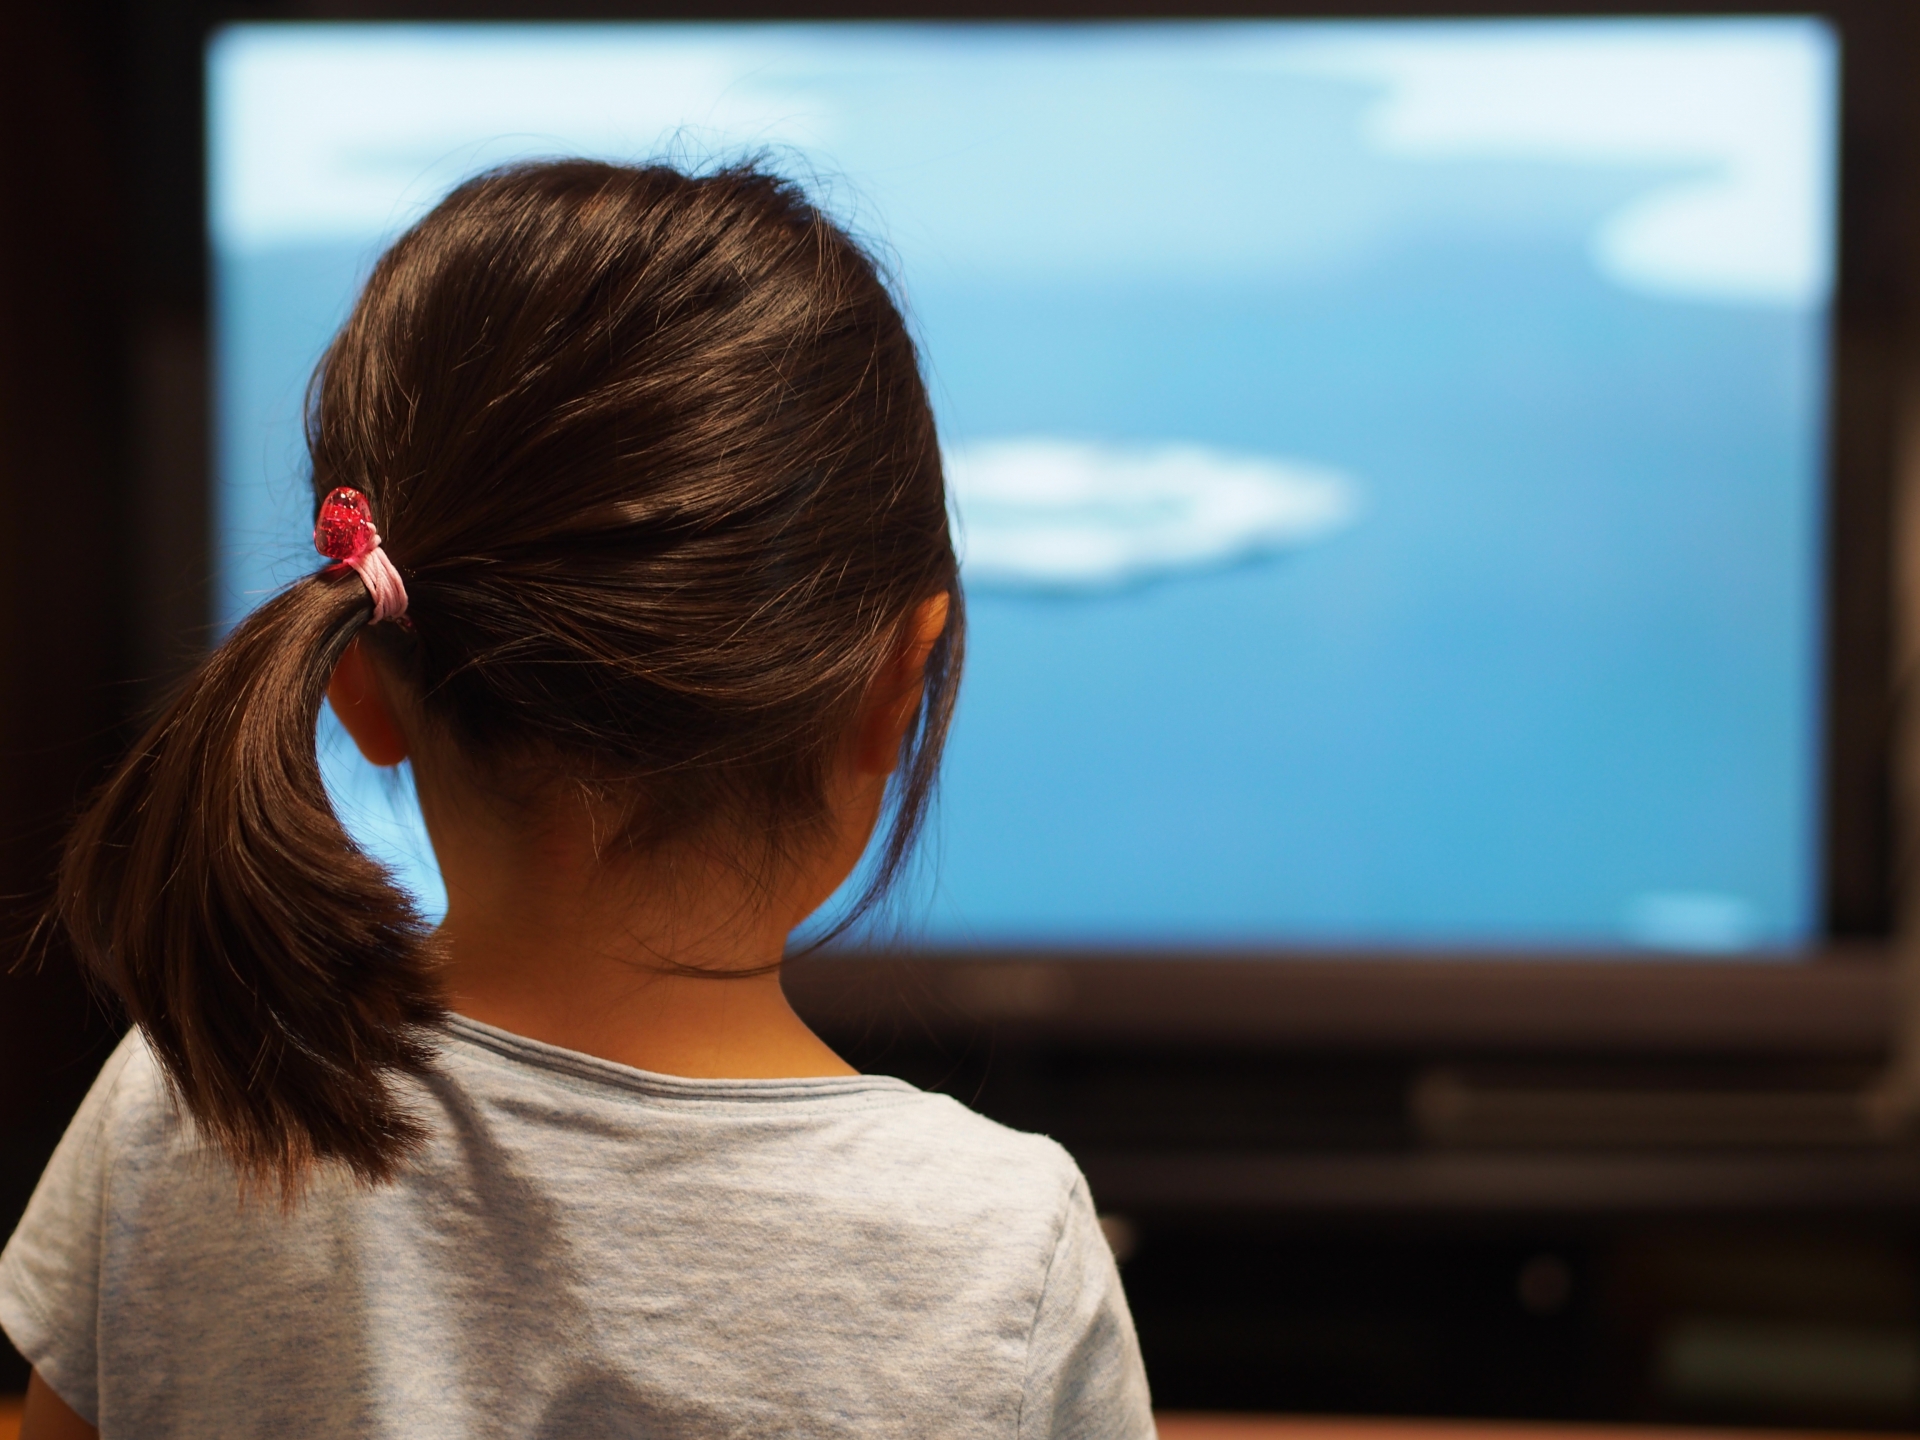 子供のテレビの見過ぎを防ぐコツや上手な付き合い方のルール作り